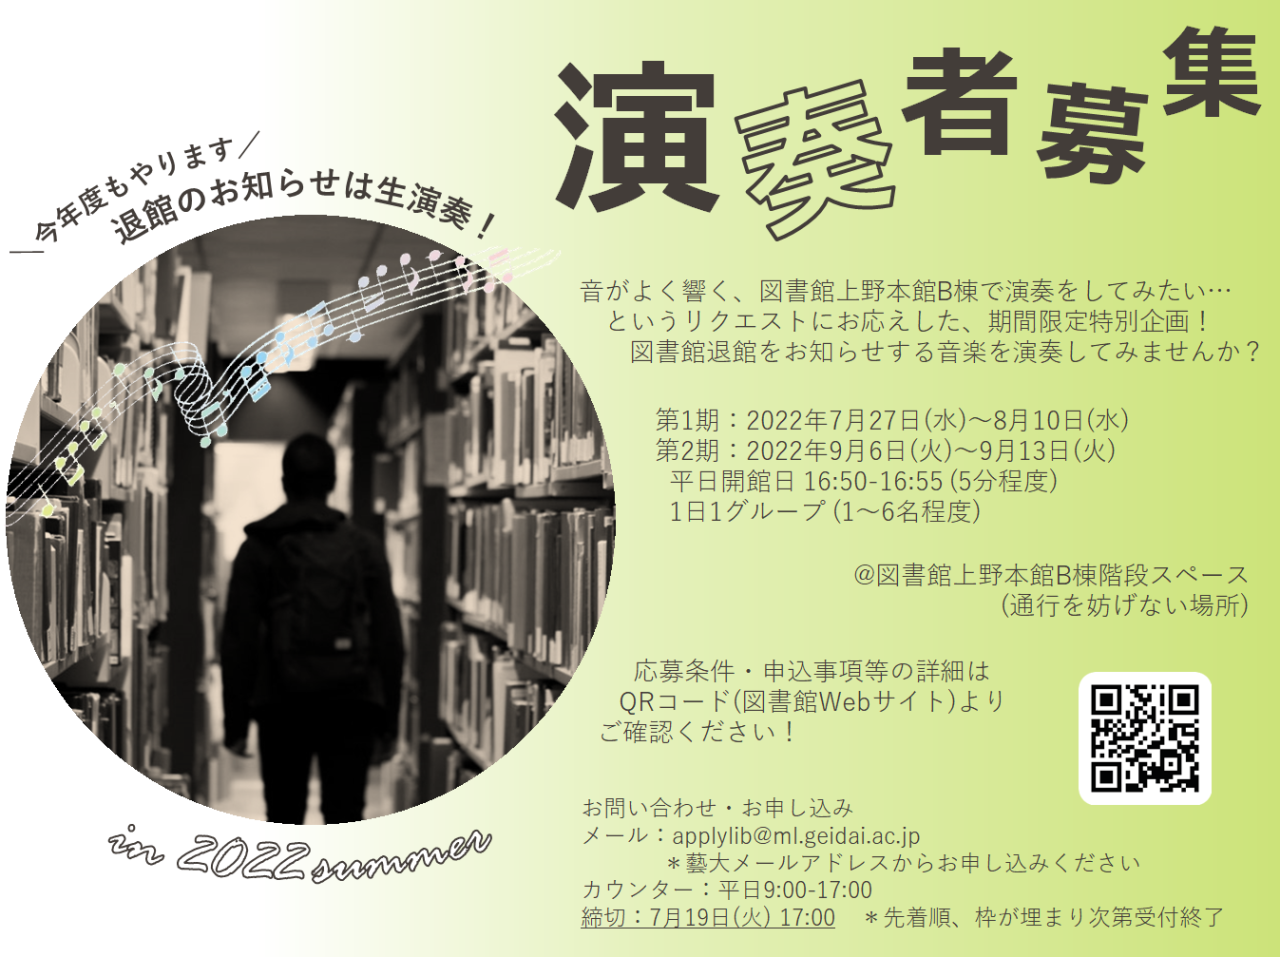 東京藝術大学附属図書館 — [企画]退館のお知らせは生演奏！[演奏者募集]